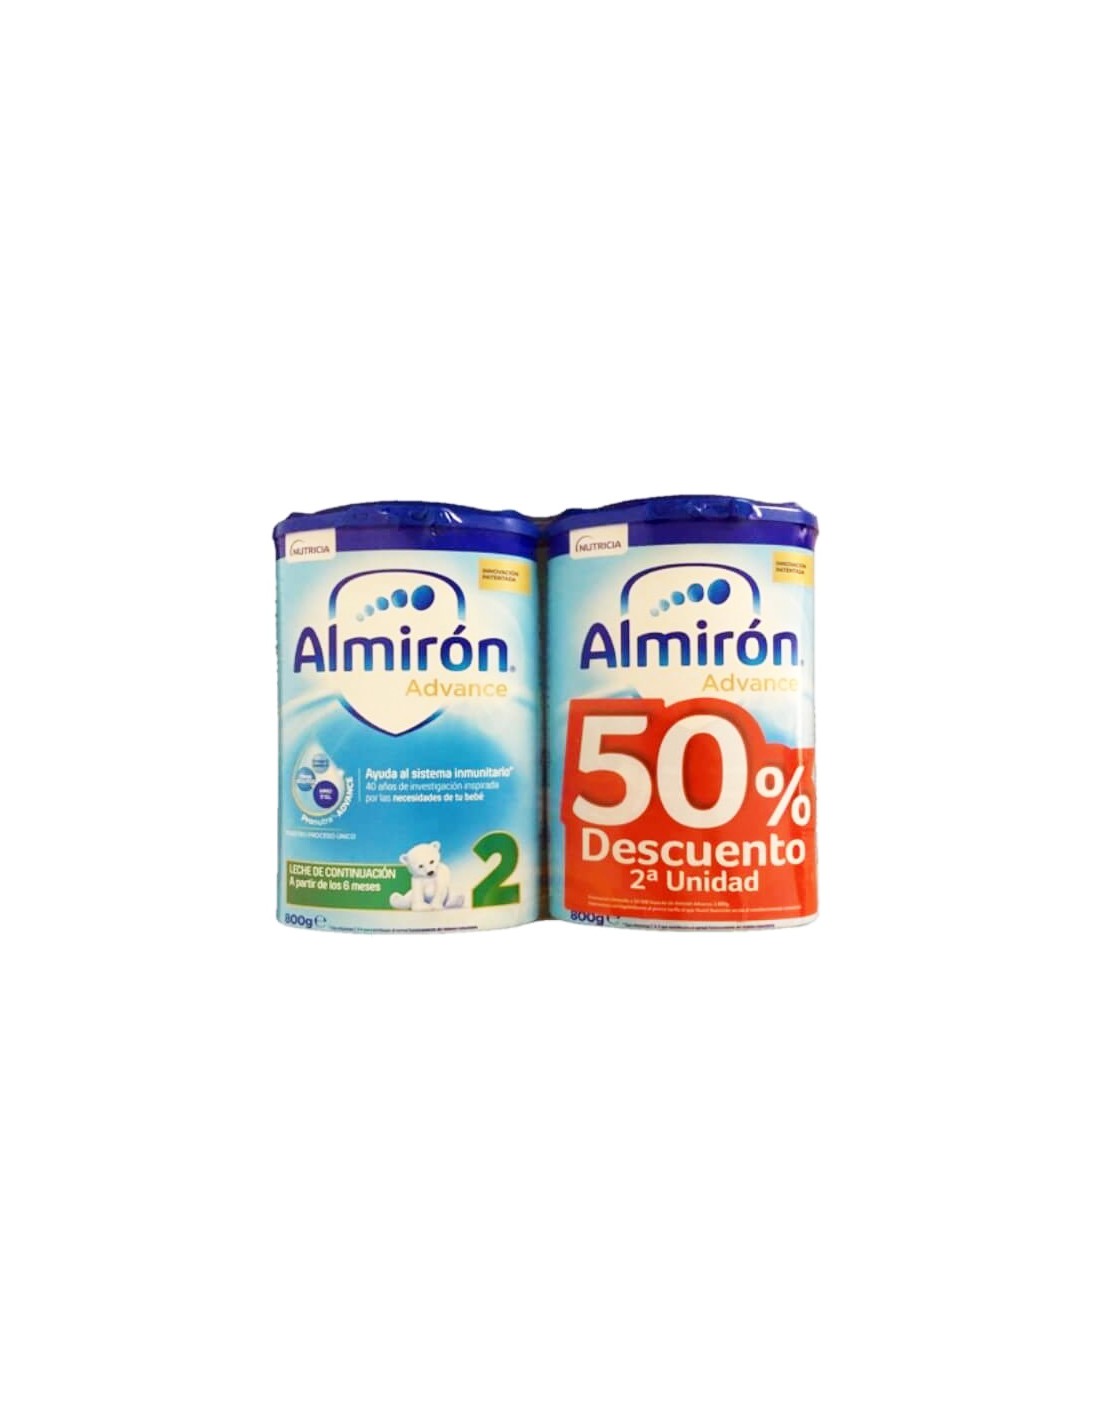 Almiron Advance Pronutra 2 Leche De Continuación 800 Gr